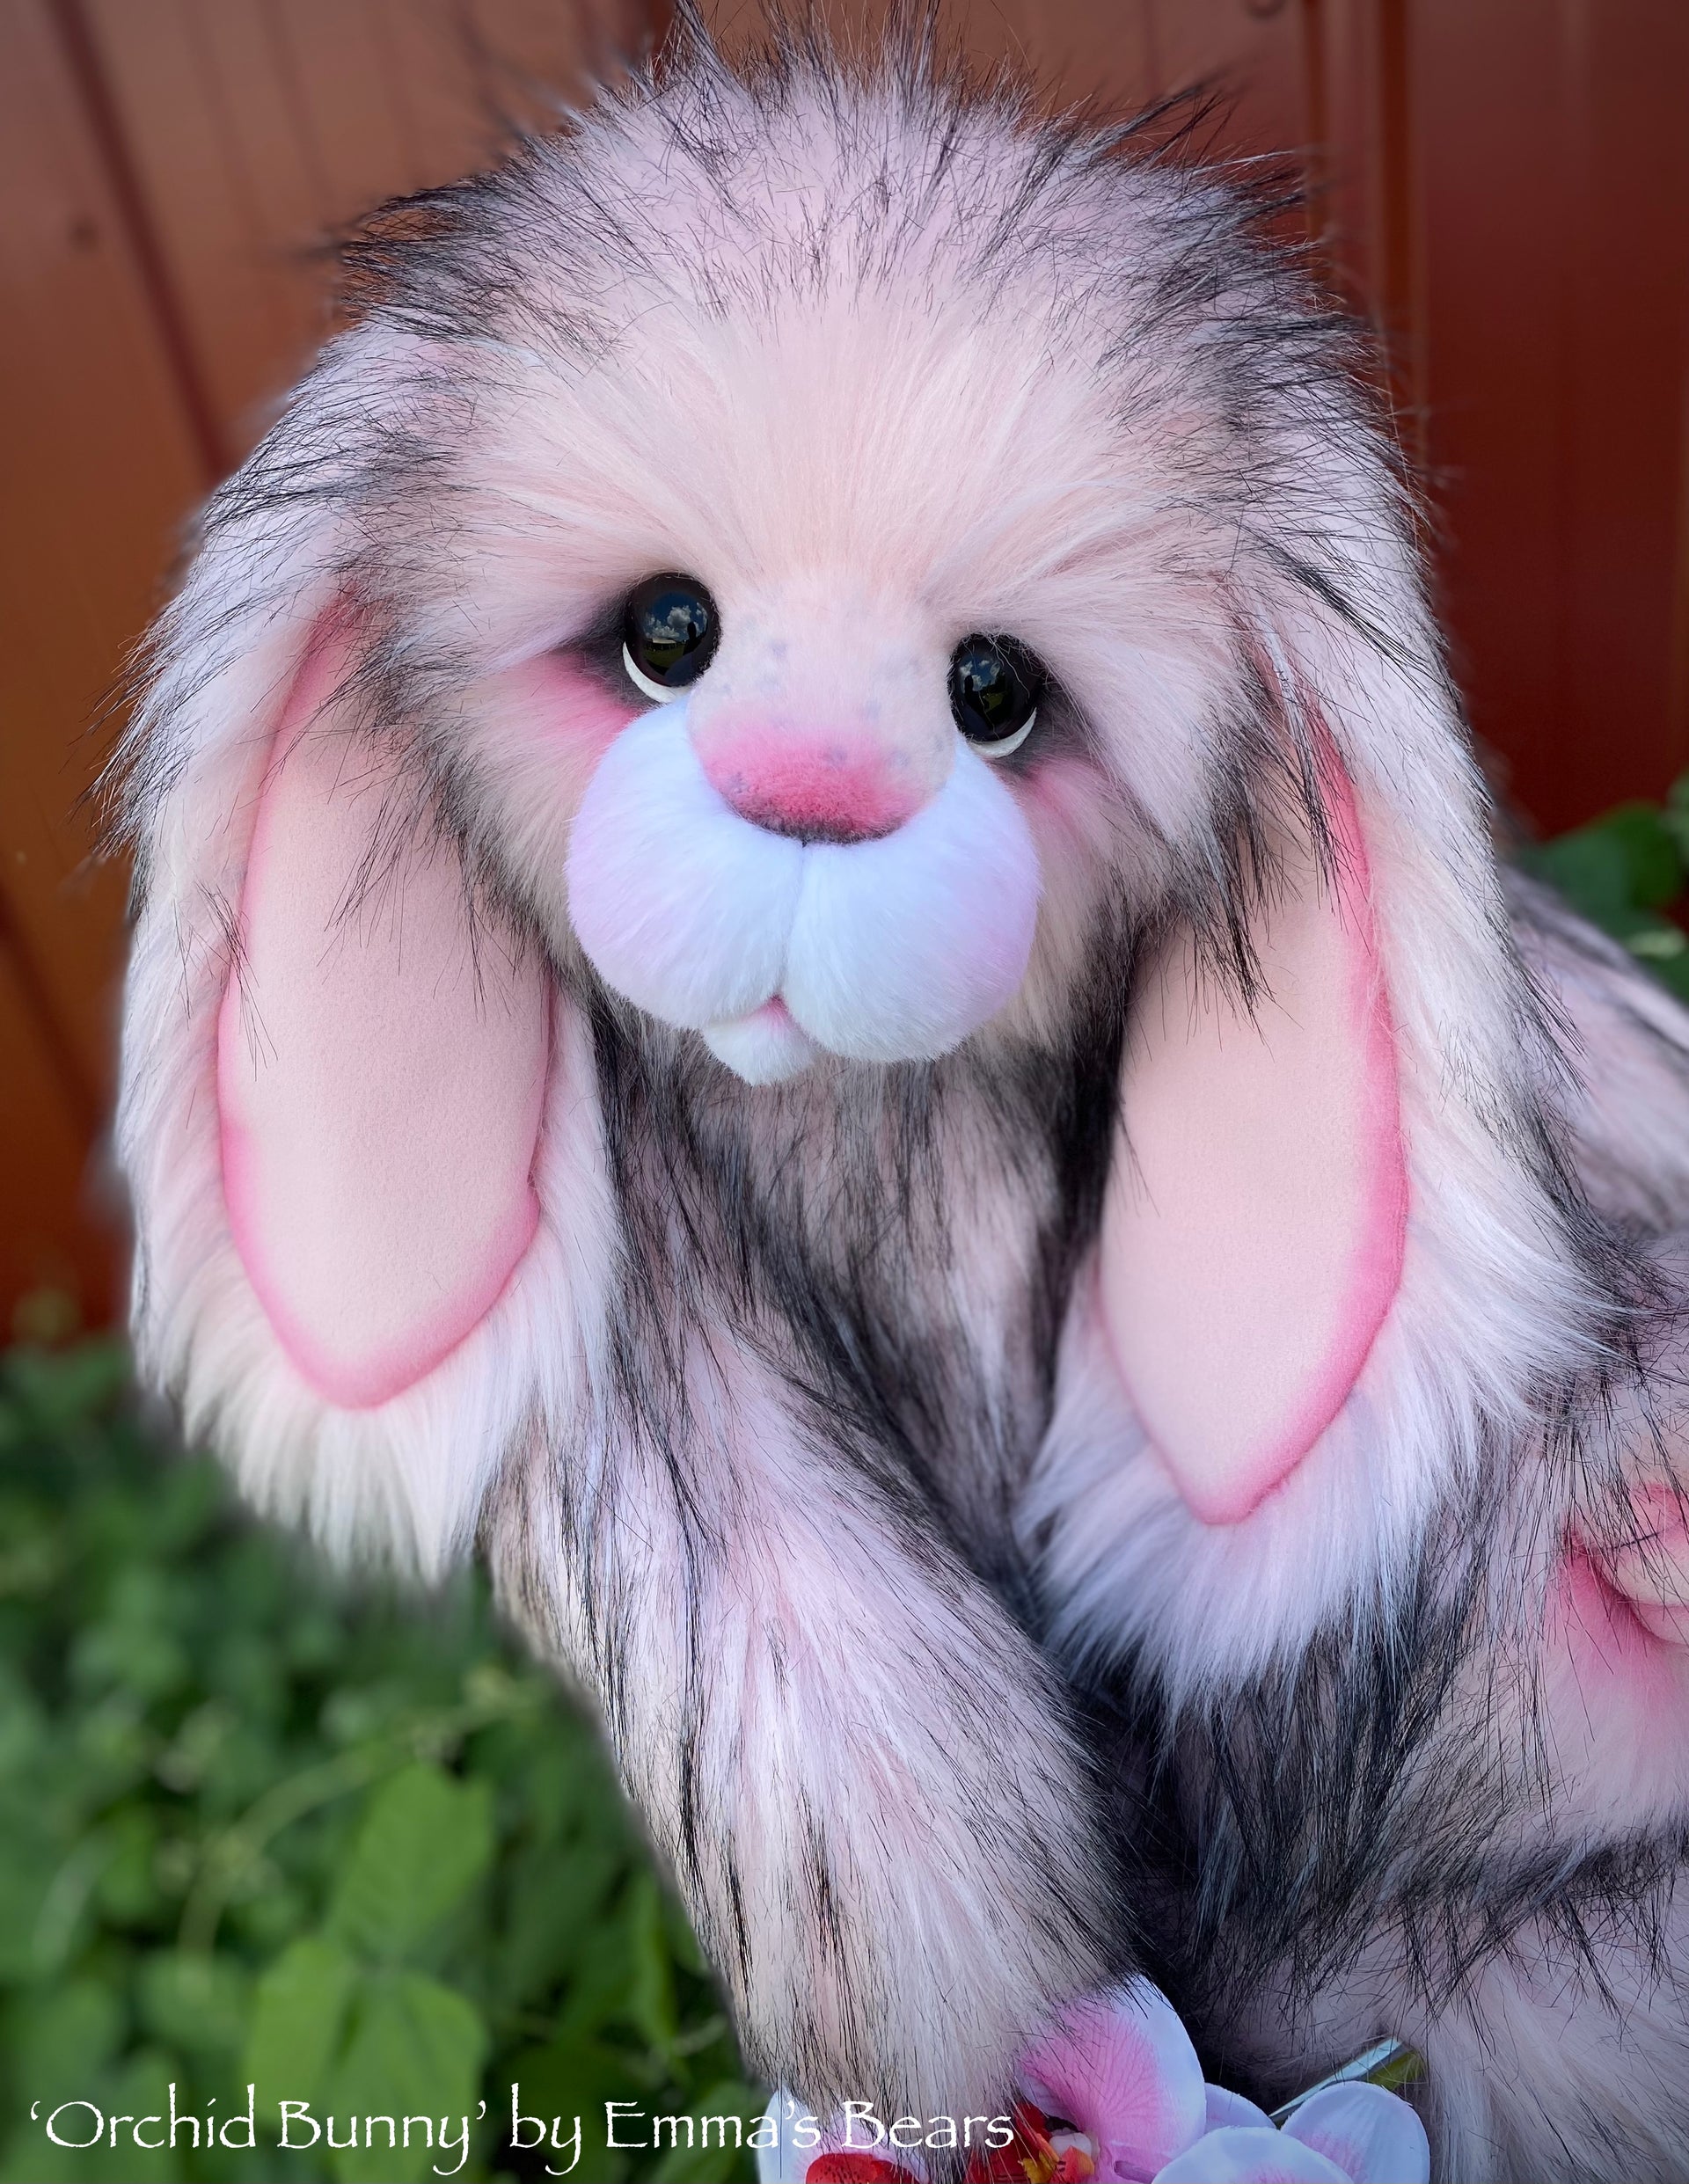 Orchid Bunny - 21" faux fur artist bunny by Emma's Bears - OOAK